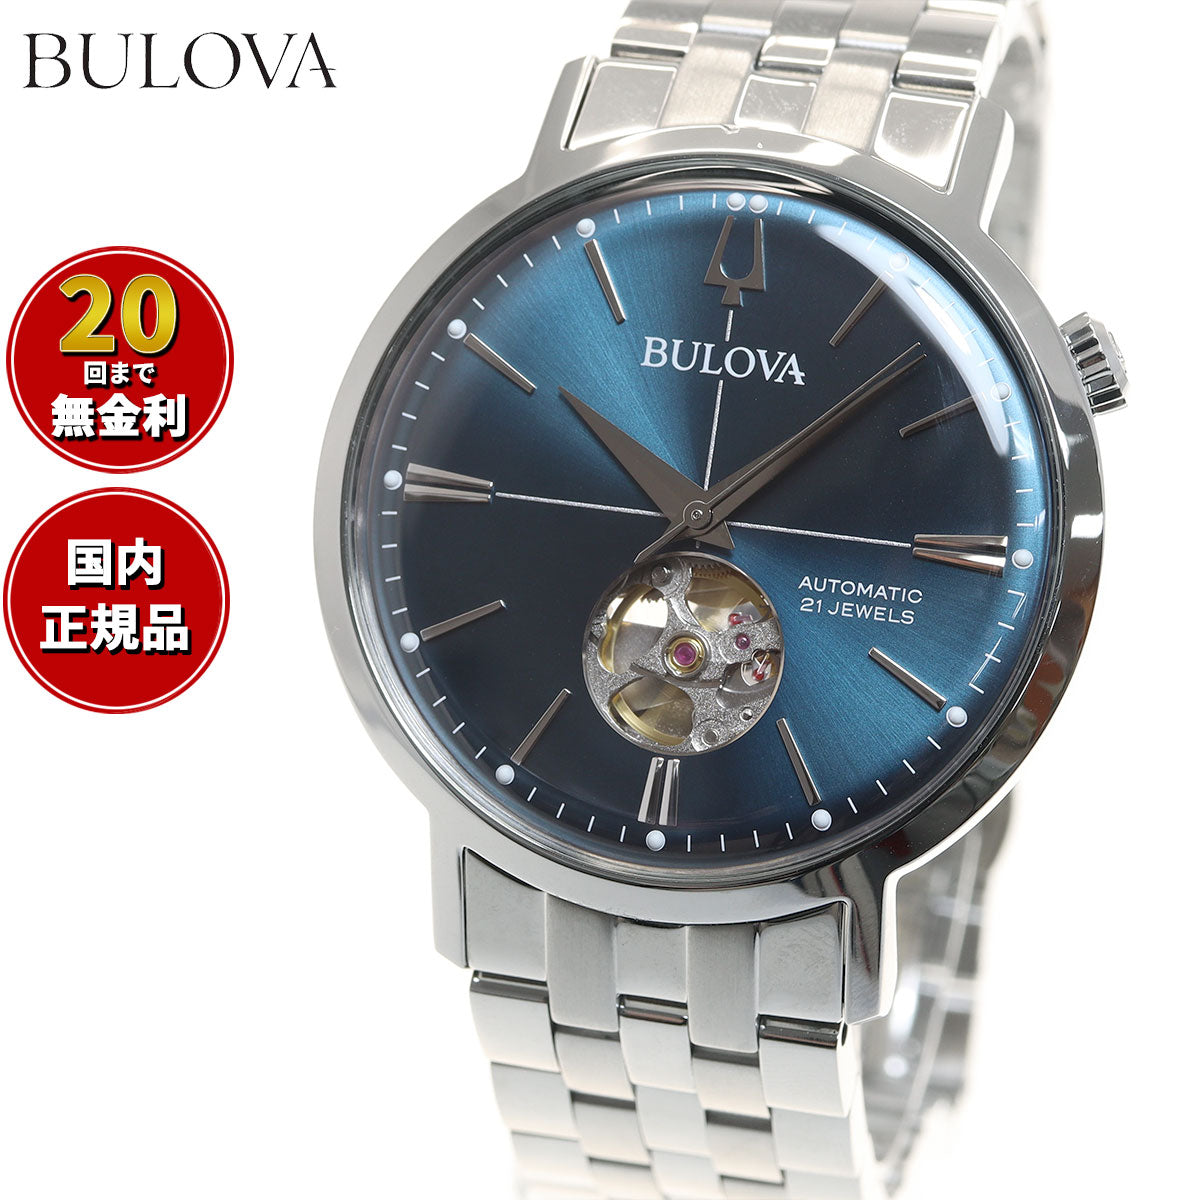 ネット BULOVA 96A170 腕時計 メンズ 自動巻き | www.terrazaalmar.com.ar